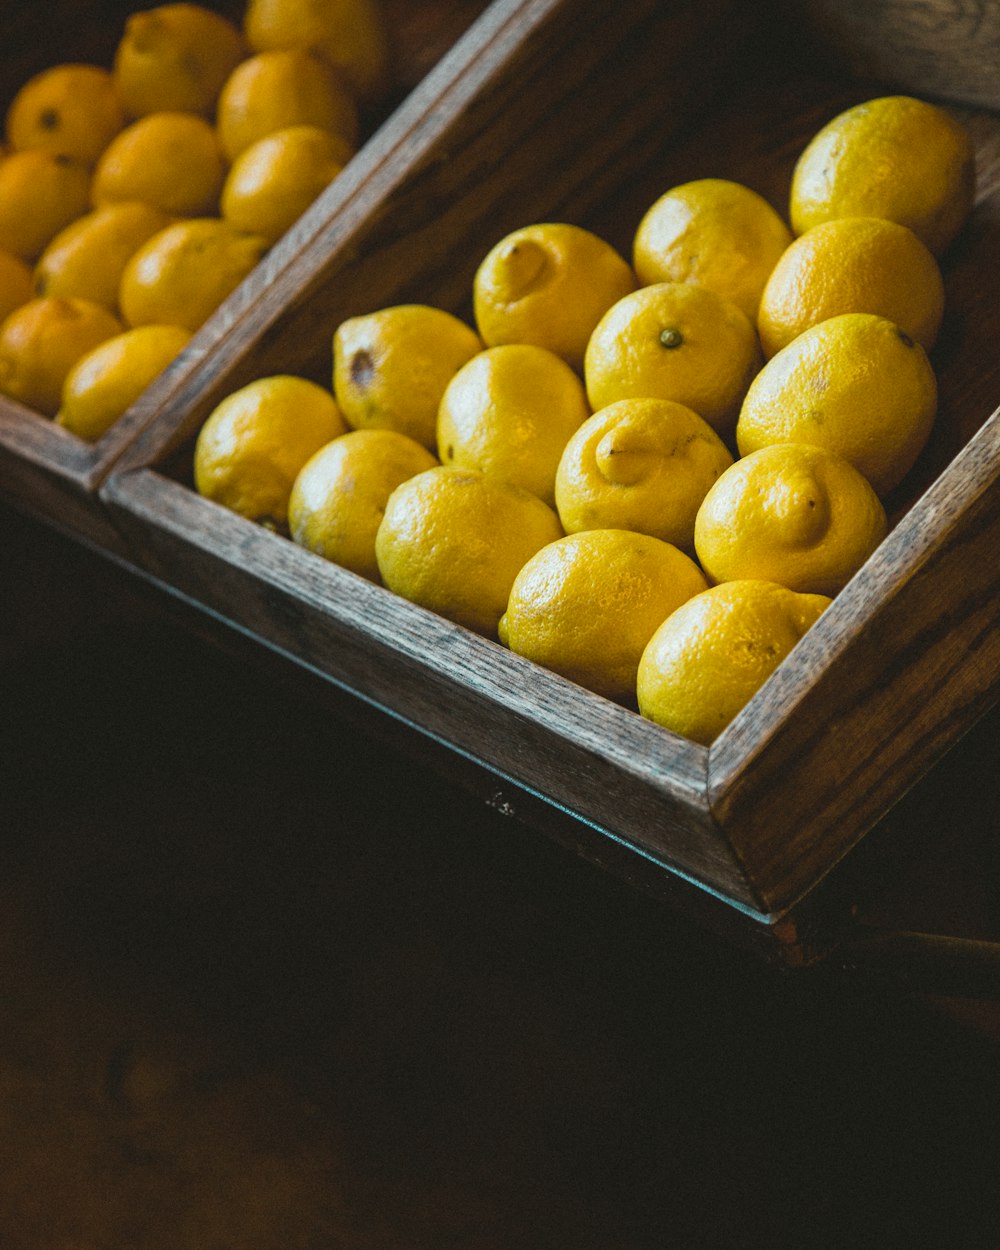 bunch of lemons on wooden rack